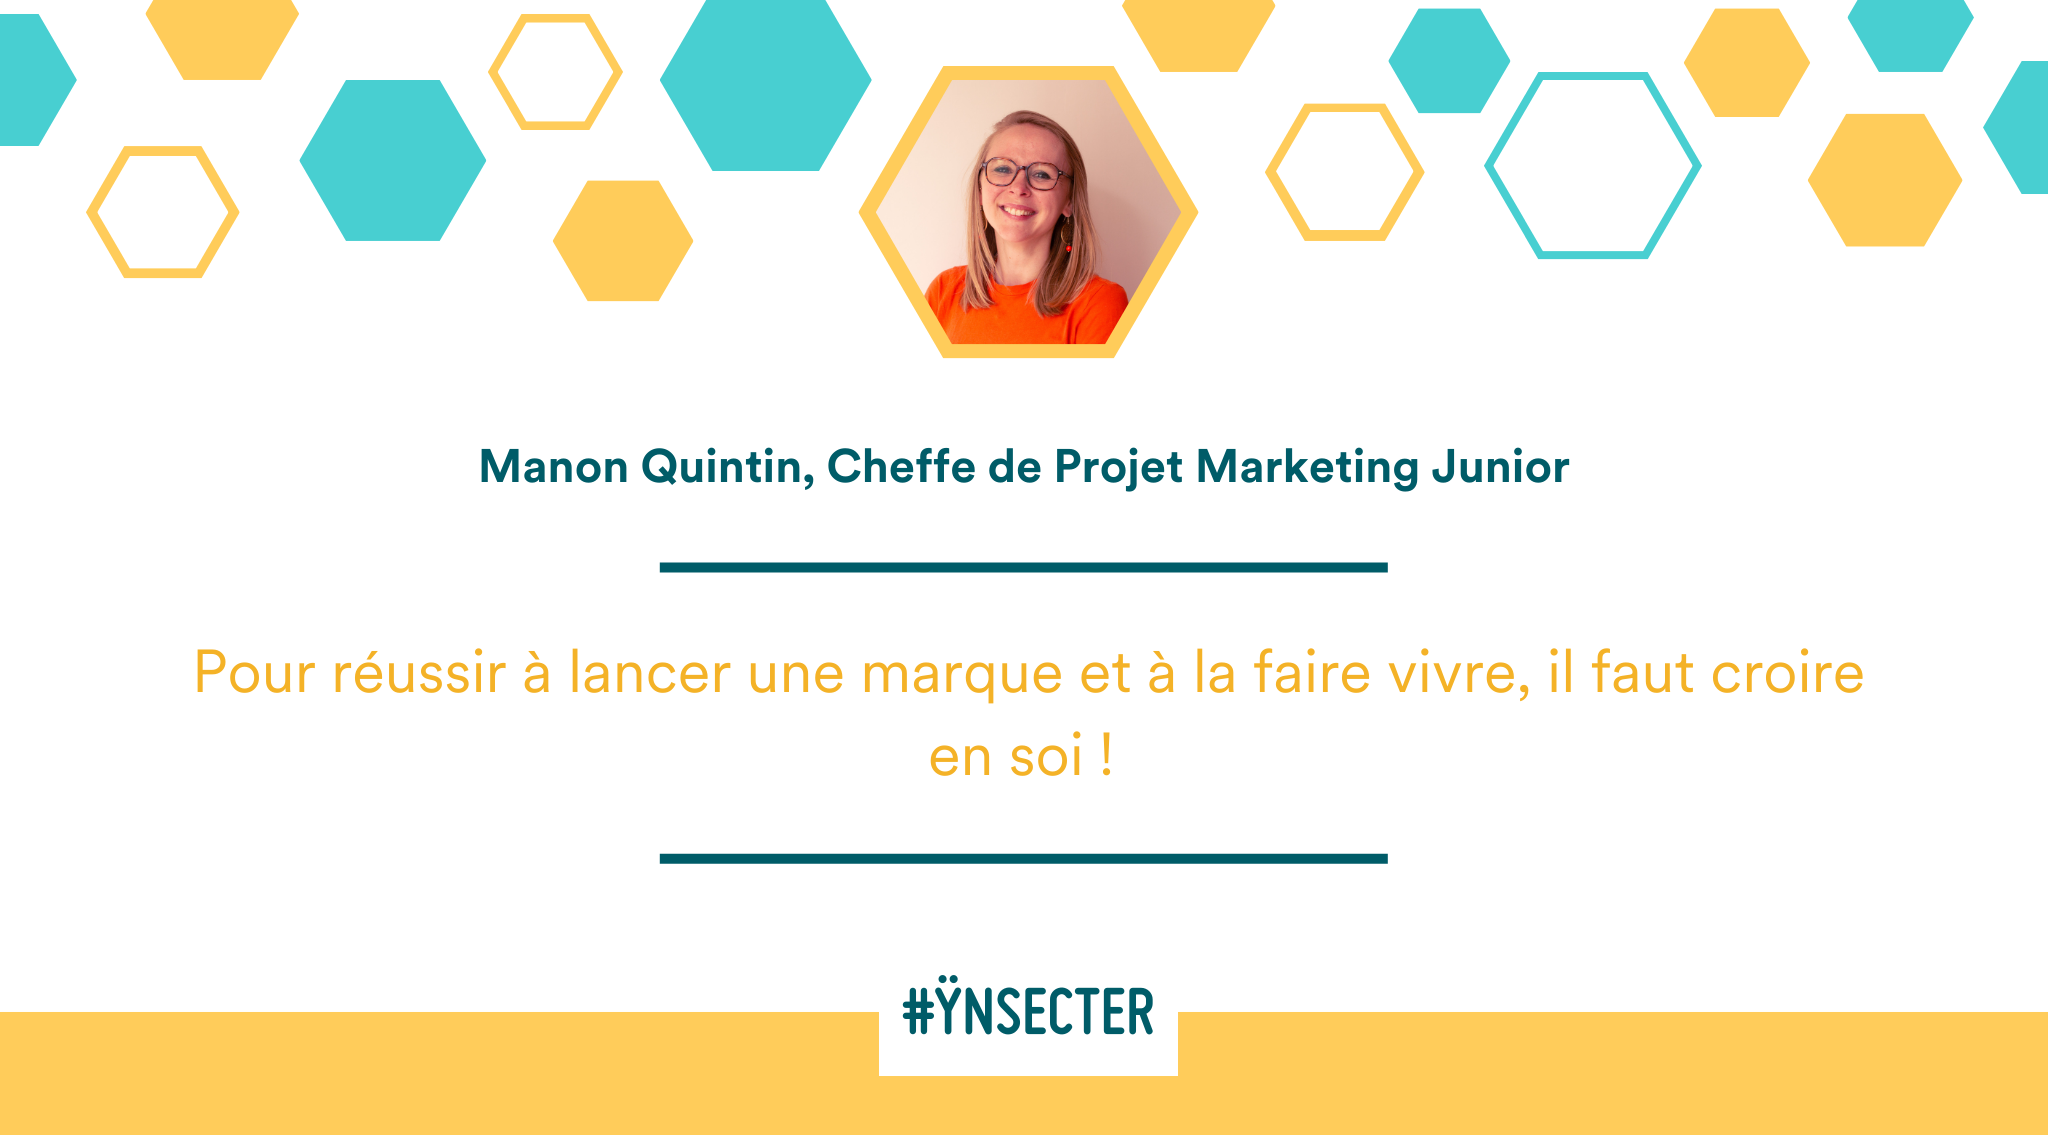 Lire la suite à propos de l’article #Ynsecter – Manon Quintin, Cheffe de Projet Marketing junior